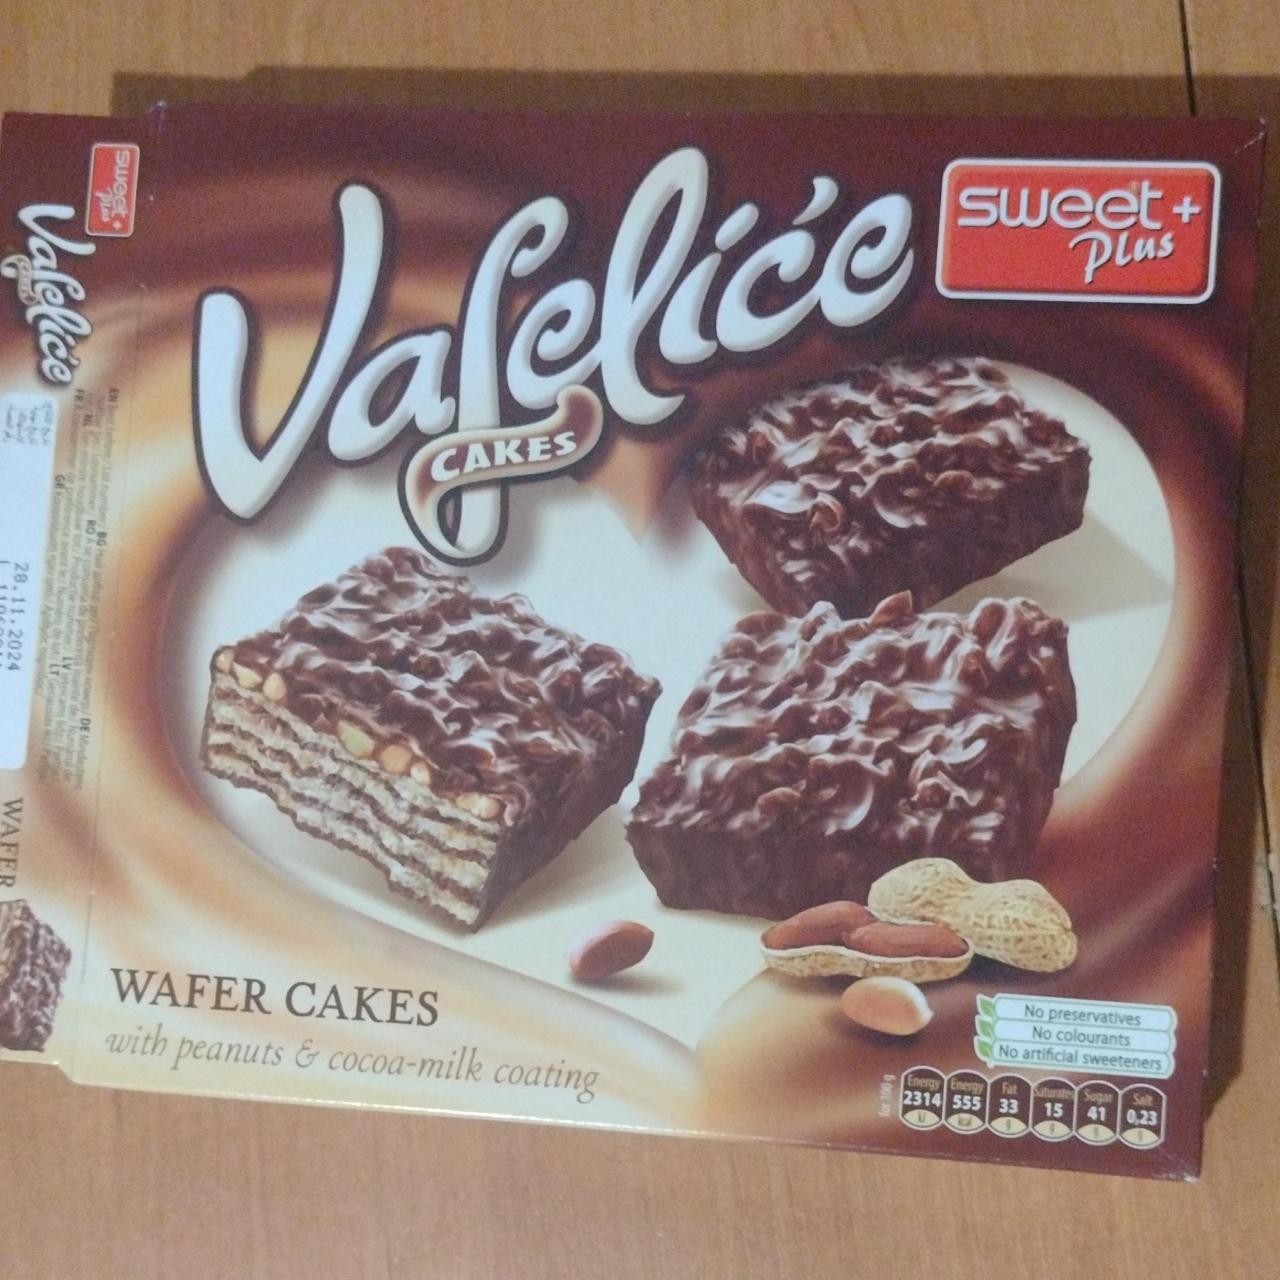 Фото - Vafelice cakes Sweet plus